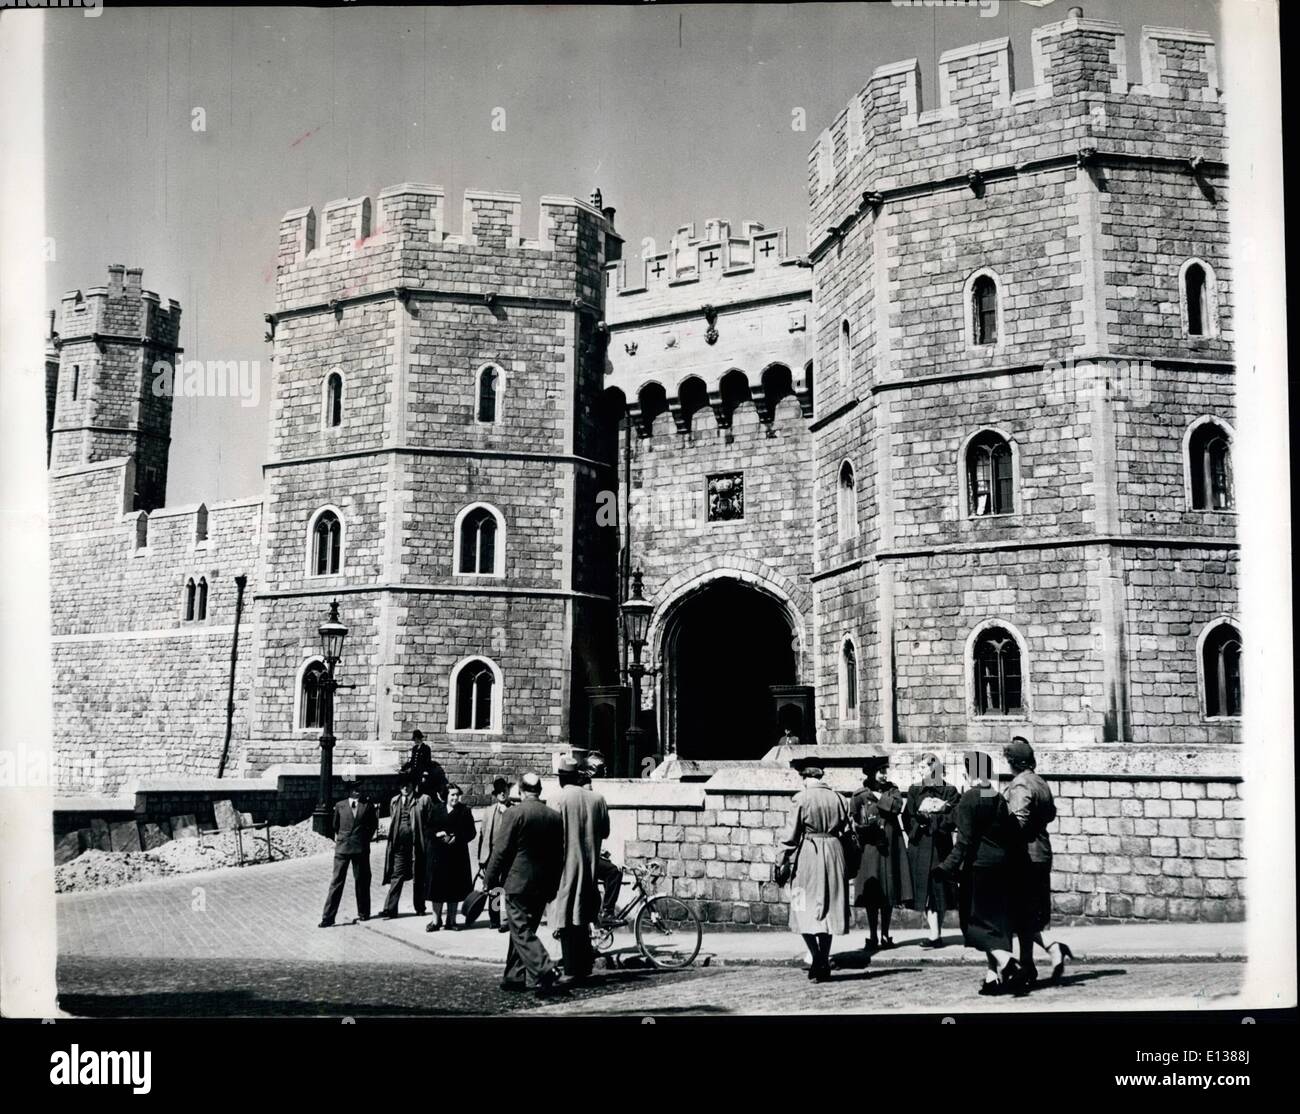 29 février 2012 - L'entrée du château à la chapelle royale à partir de la colline du château, l'une des entrées populaires pour les visiteurs. Le Royalborough de Windsor à Coronation Année. : Toujours un ''must'' sur la liste des lieux touristiques à visiter, les Windsor s'attend à ce que cette année encore plus de visiteurs que d'habitude. Bien que construit comme forteresse par Guillaume le Conquérant en 1979, le château de Windsor est, depuis de nombreuses années, la tradition accueil du souverain et de chacun des paliers de la souveraine a ajouté quelque chose à la gloire de l'ancien château Banque D'Images